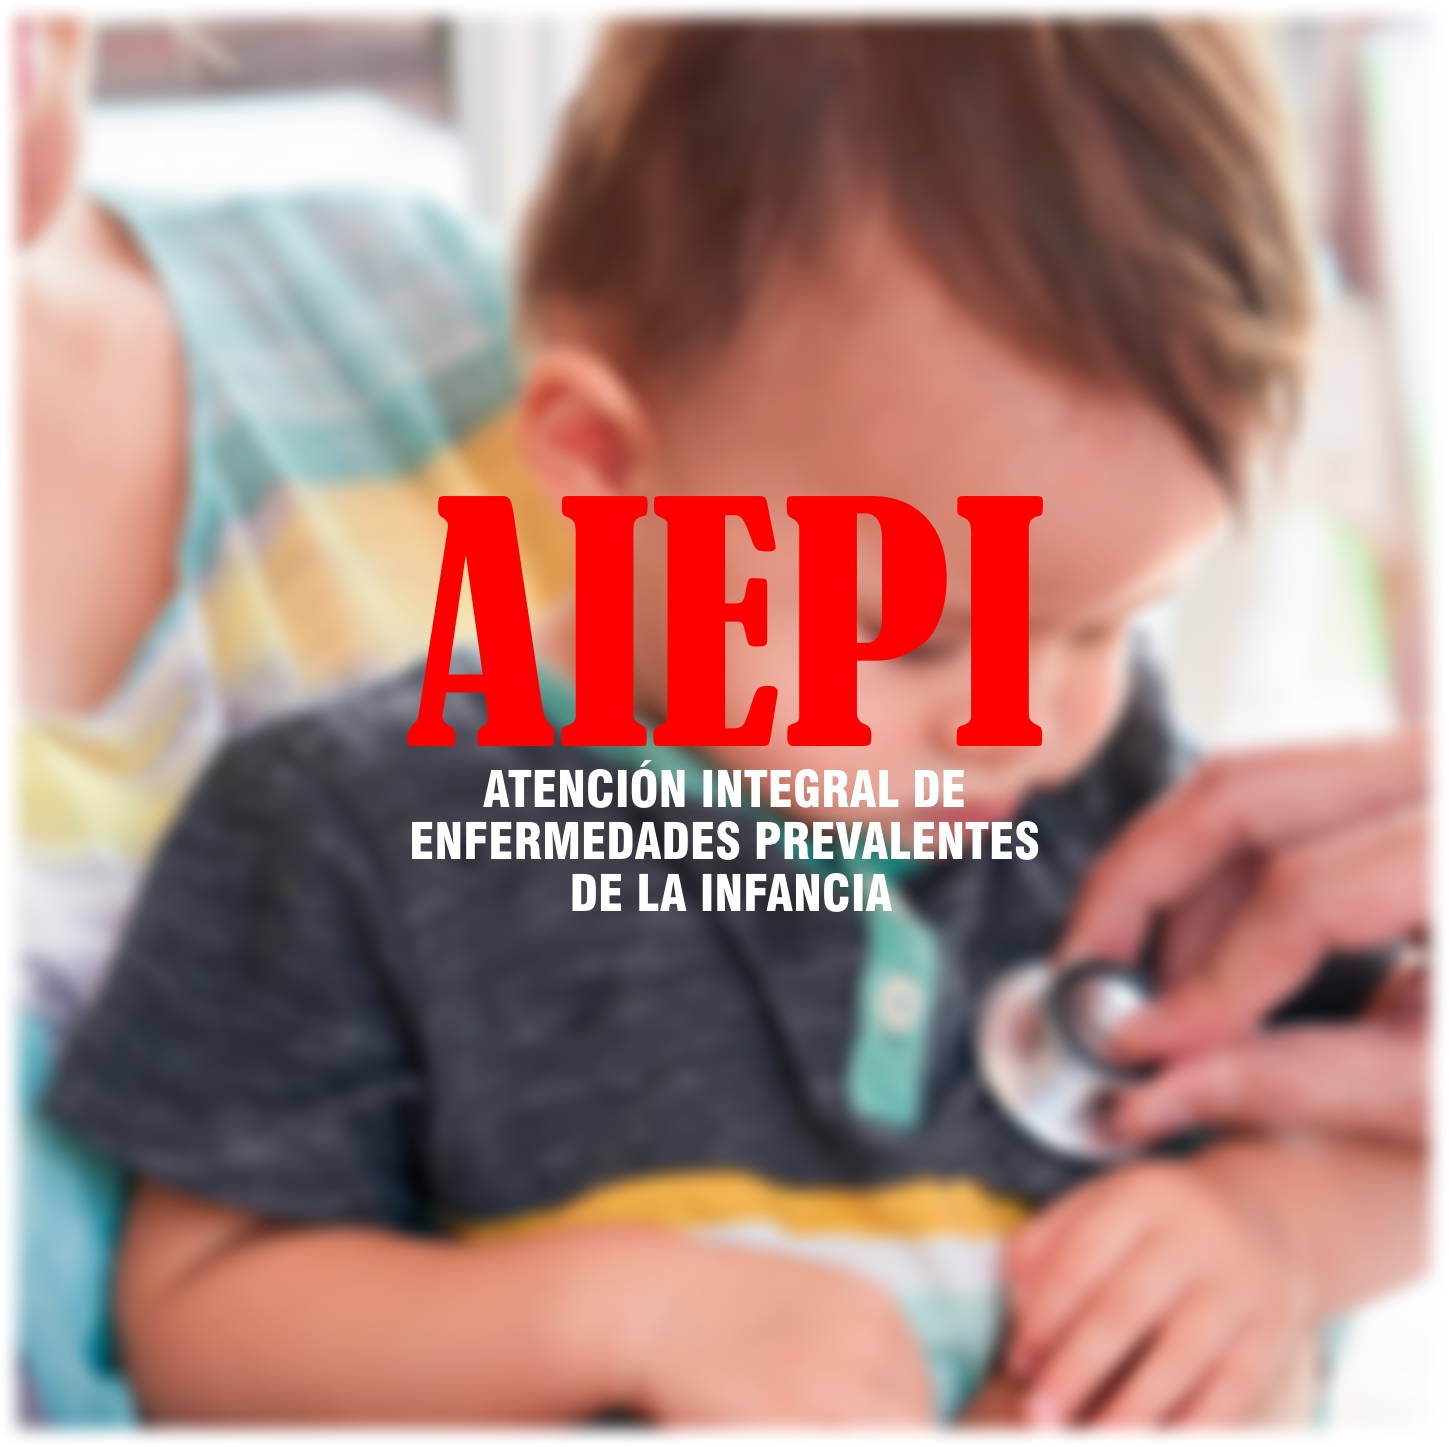 AIEPI ATENCION INTEGRAL DE ENFERMEDADES PREVALENTES DE LA INFANCIA